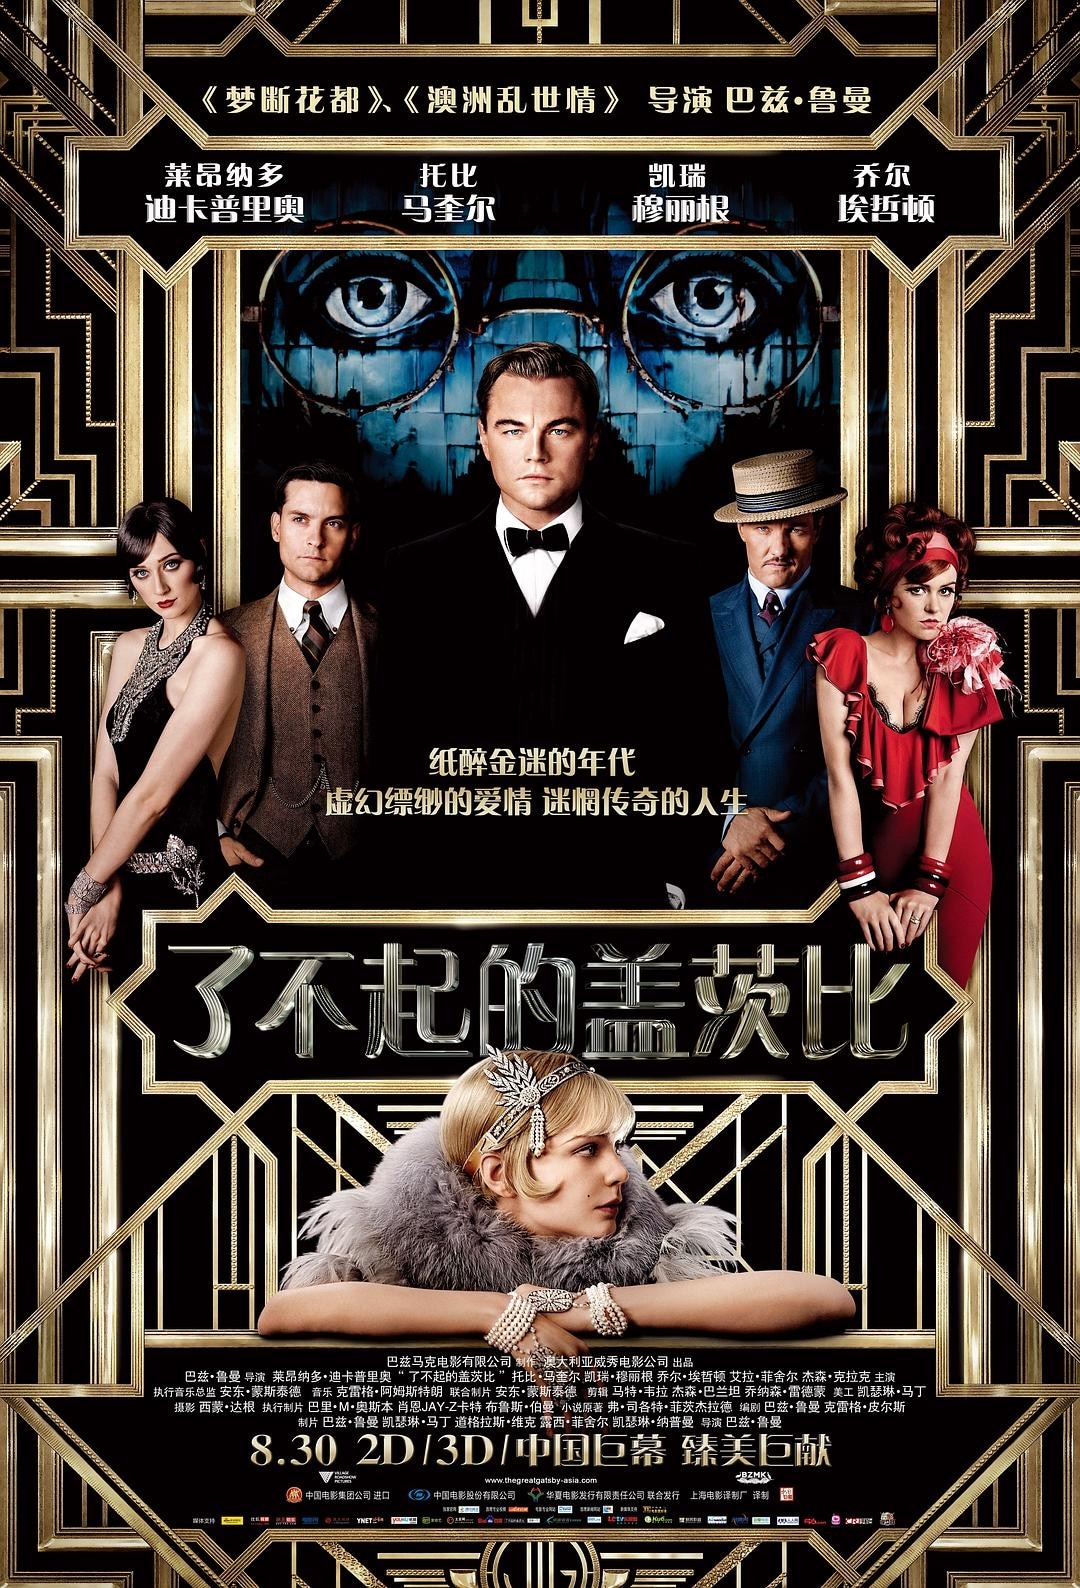 了不起的盖茨比/富翁小传 The.Great.Gatsby.2013.1080p.BluRay.x264.DTS-FGT 15.38GB-1.jpg